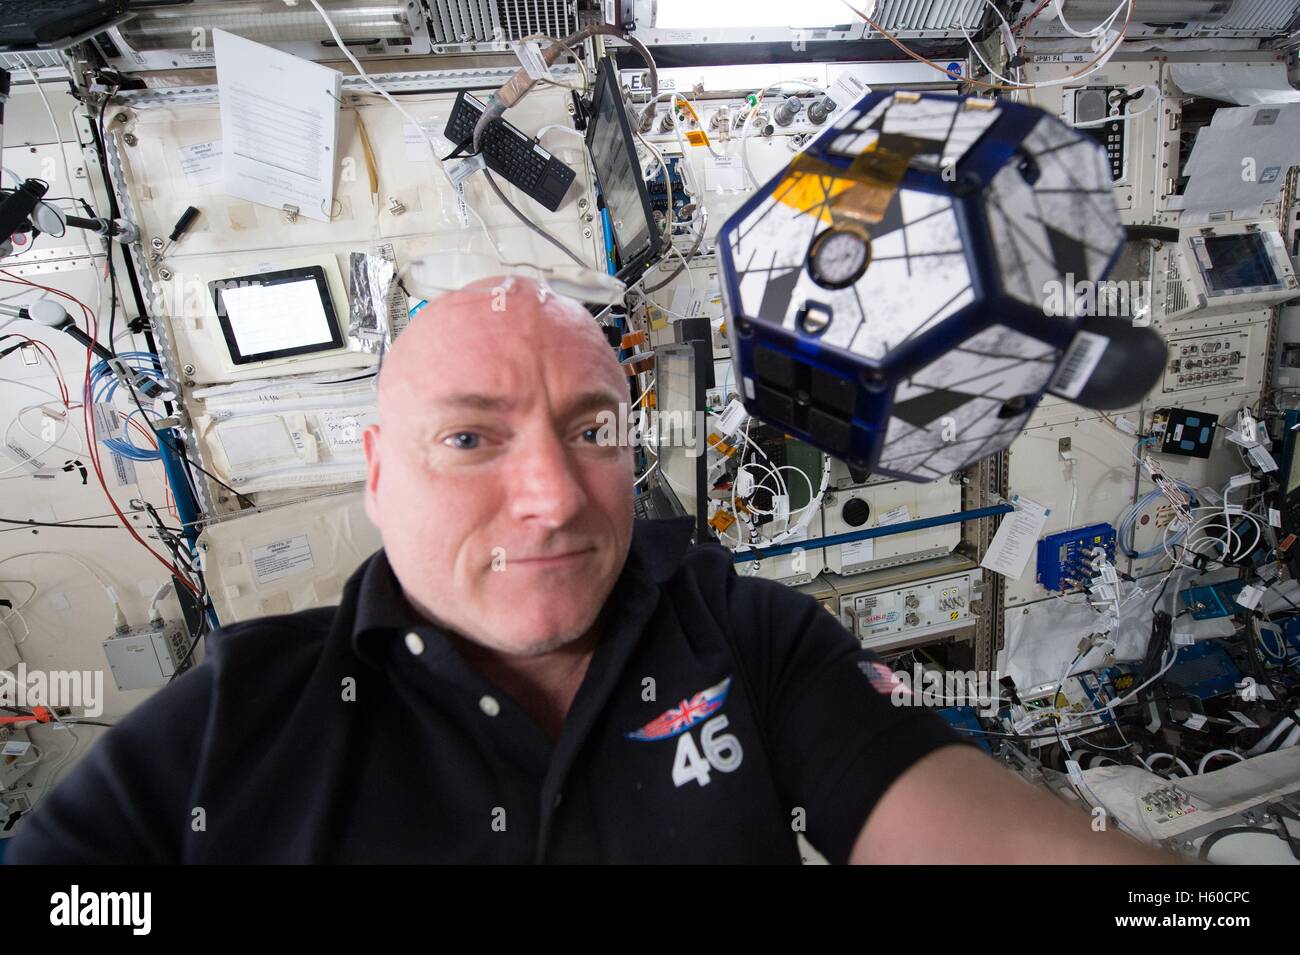 NASA internationale Raumstation ISS-Expedition 44 Mission Prime Crew Astronaut Scott Kelly betreibt einen Sphären Satelliten verwendet für Raumschiff andocken und Manöver 25. Januar 2016 in der Erdumlaufbahn. Stockfoto